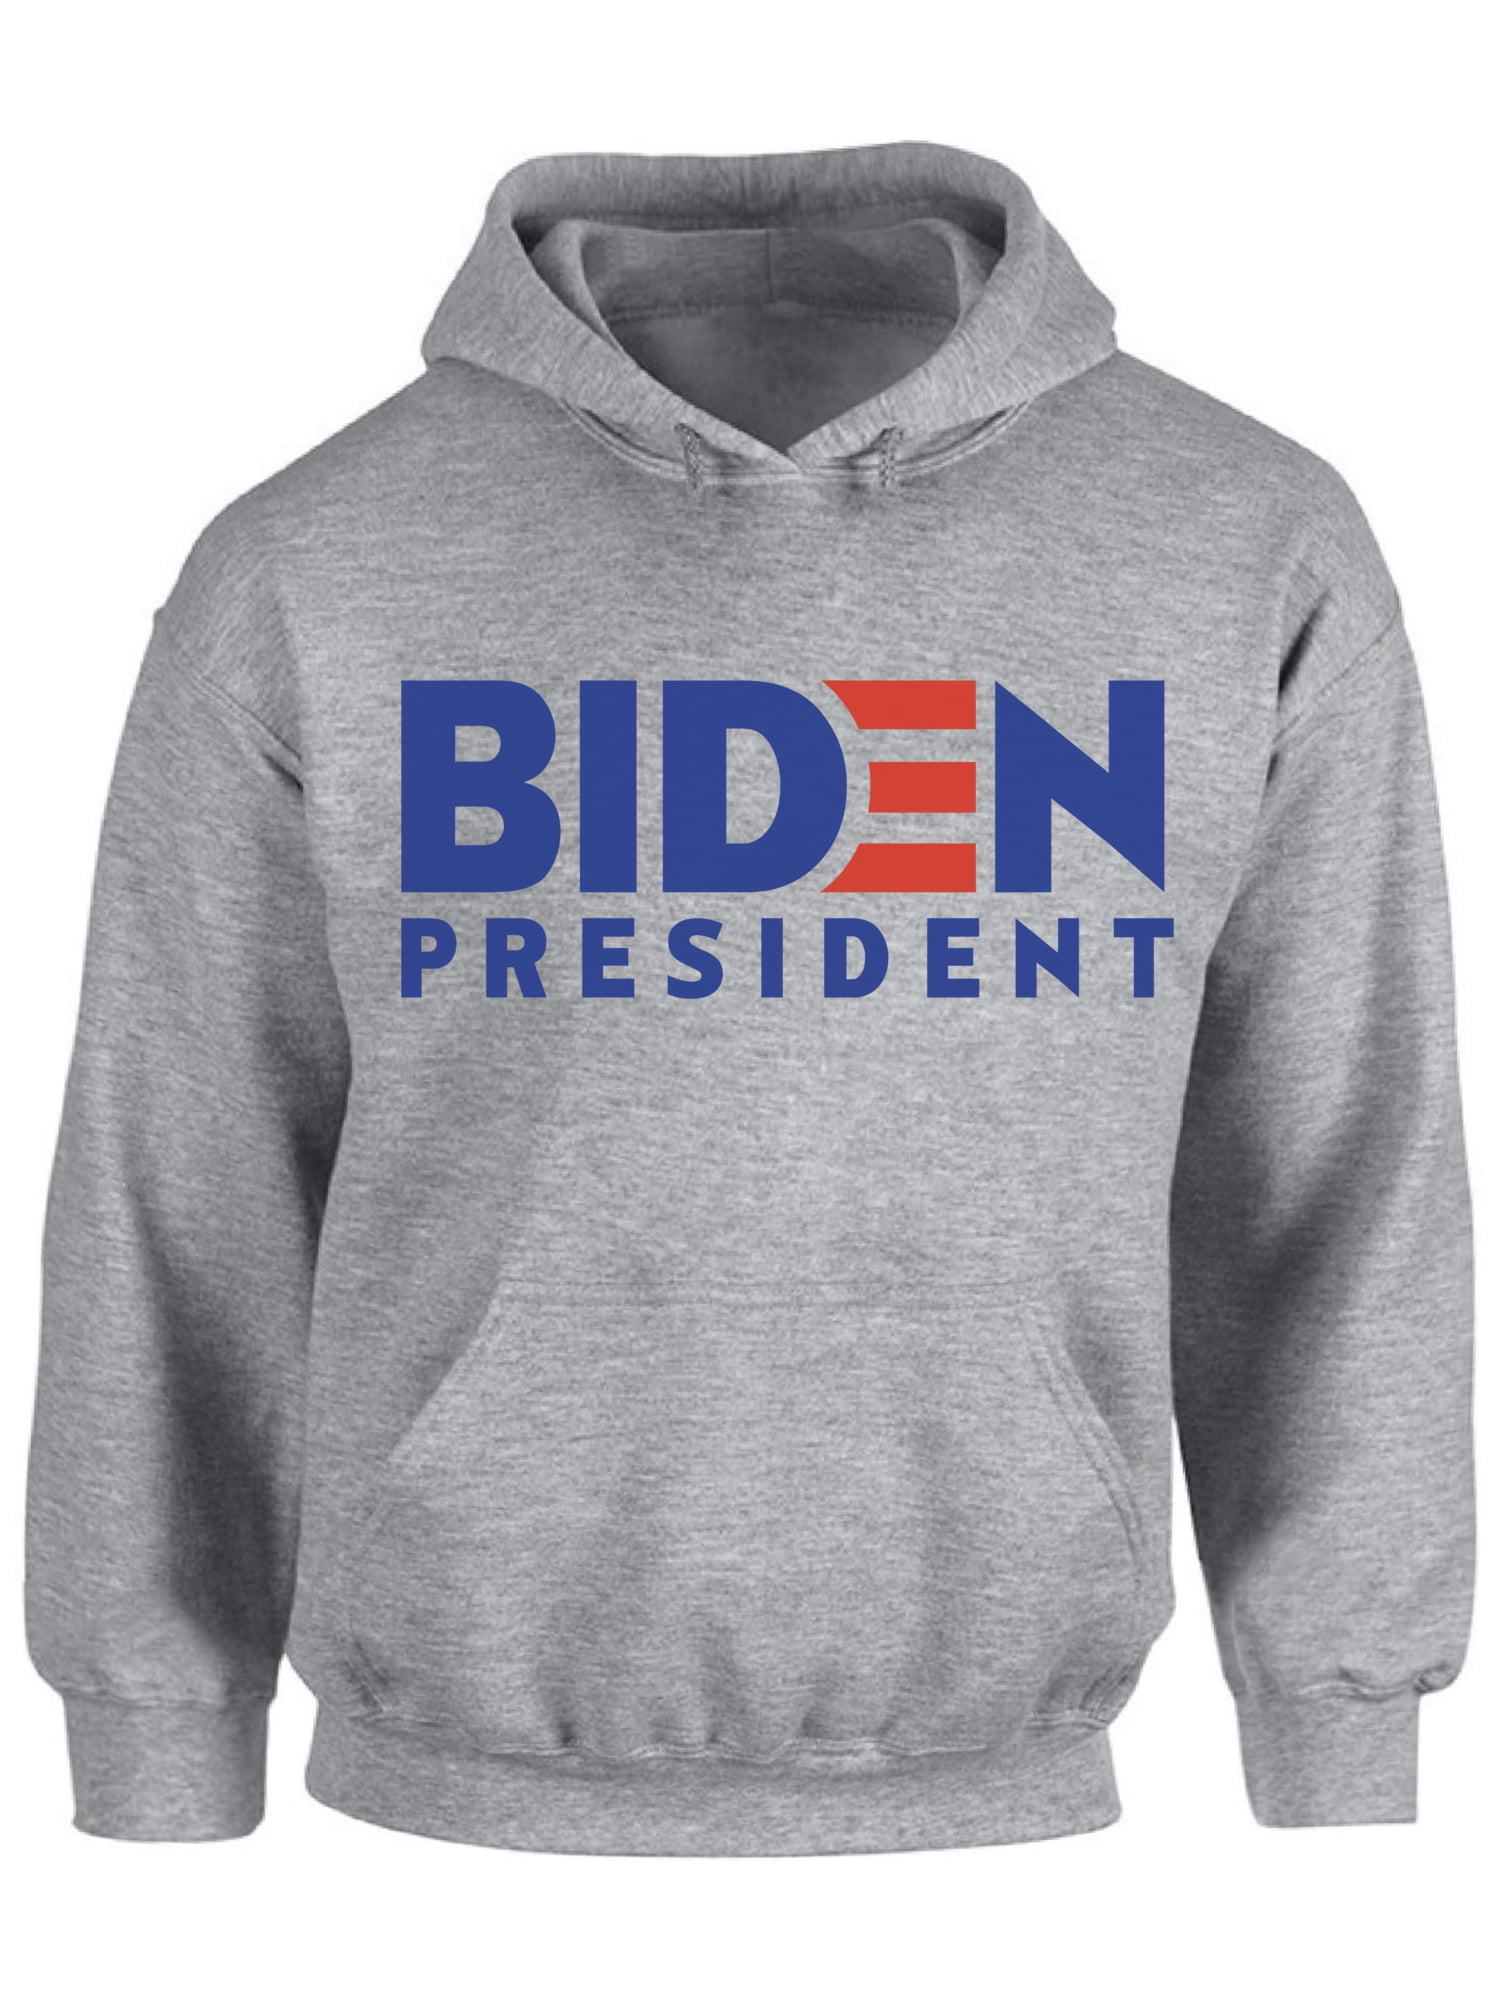 Biden Harris 2020 Sweatshirt Patriotic USA Cute Toddler Hoodie 